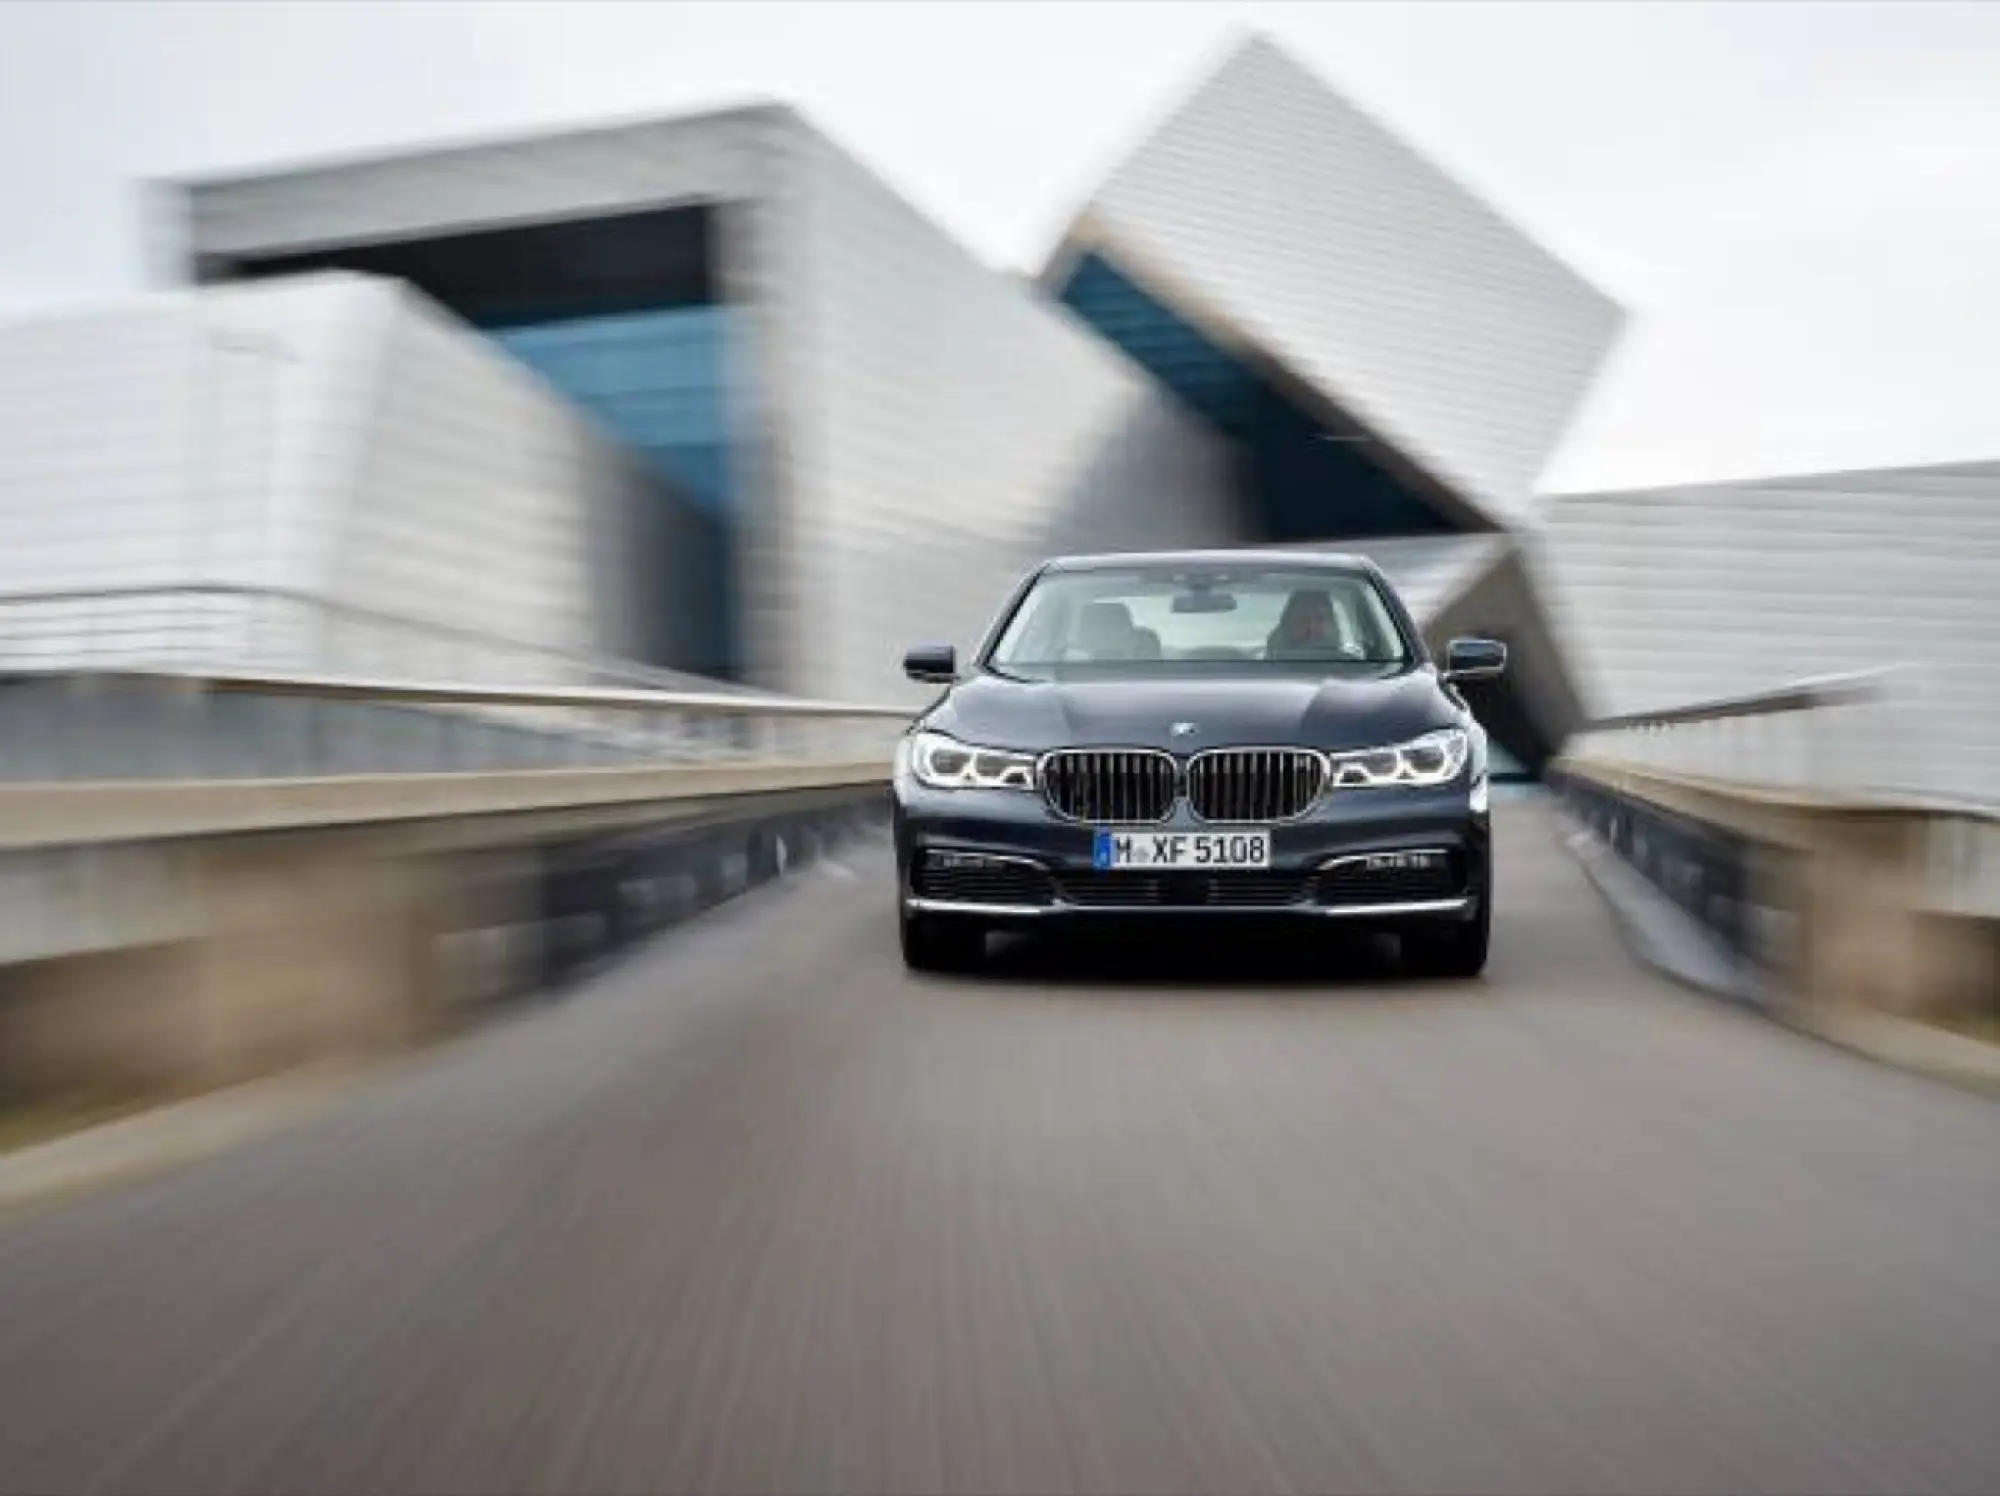 BMW al Salone di Francoforte 2015 - 113